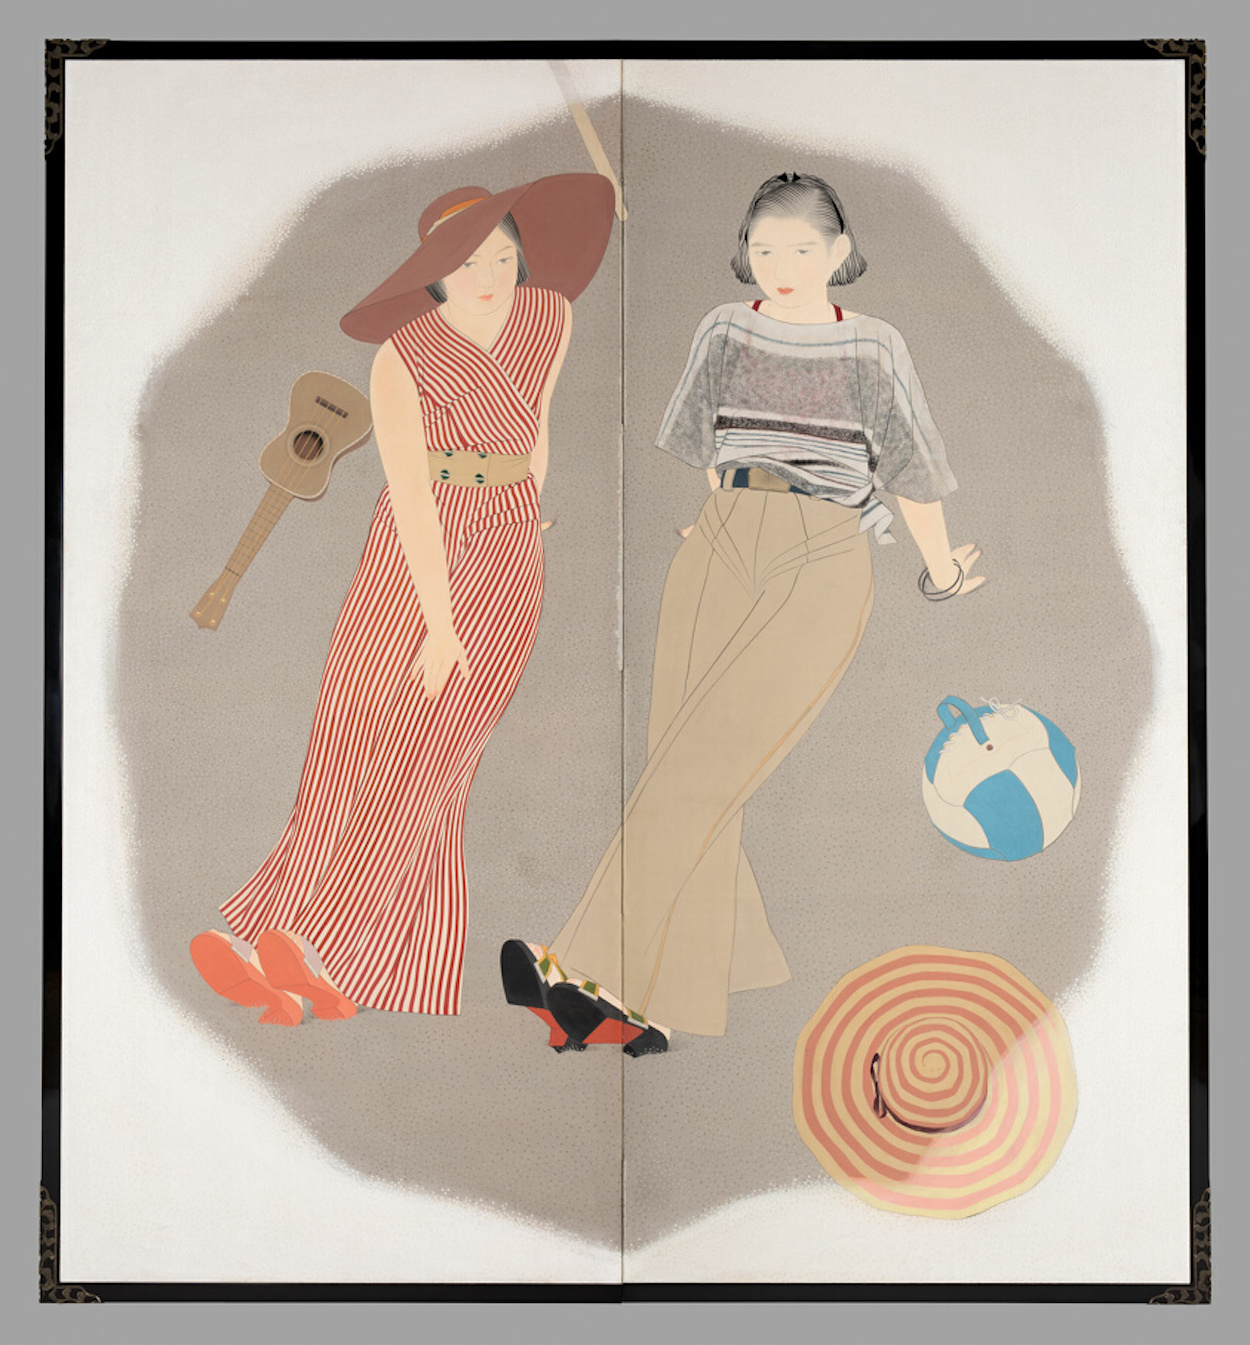 蔭に憩ふ by Yamakawa Shuho - 1933年頃 - 188.5 × 173 cm 